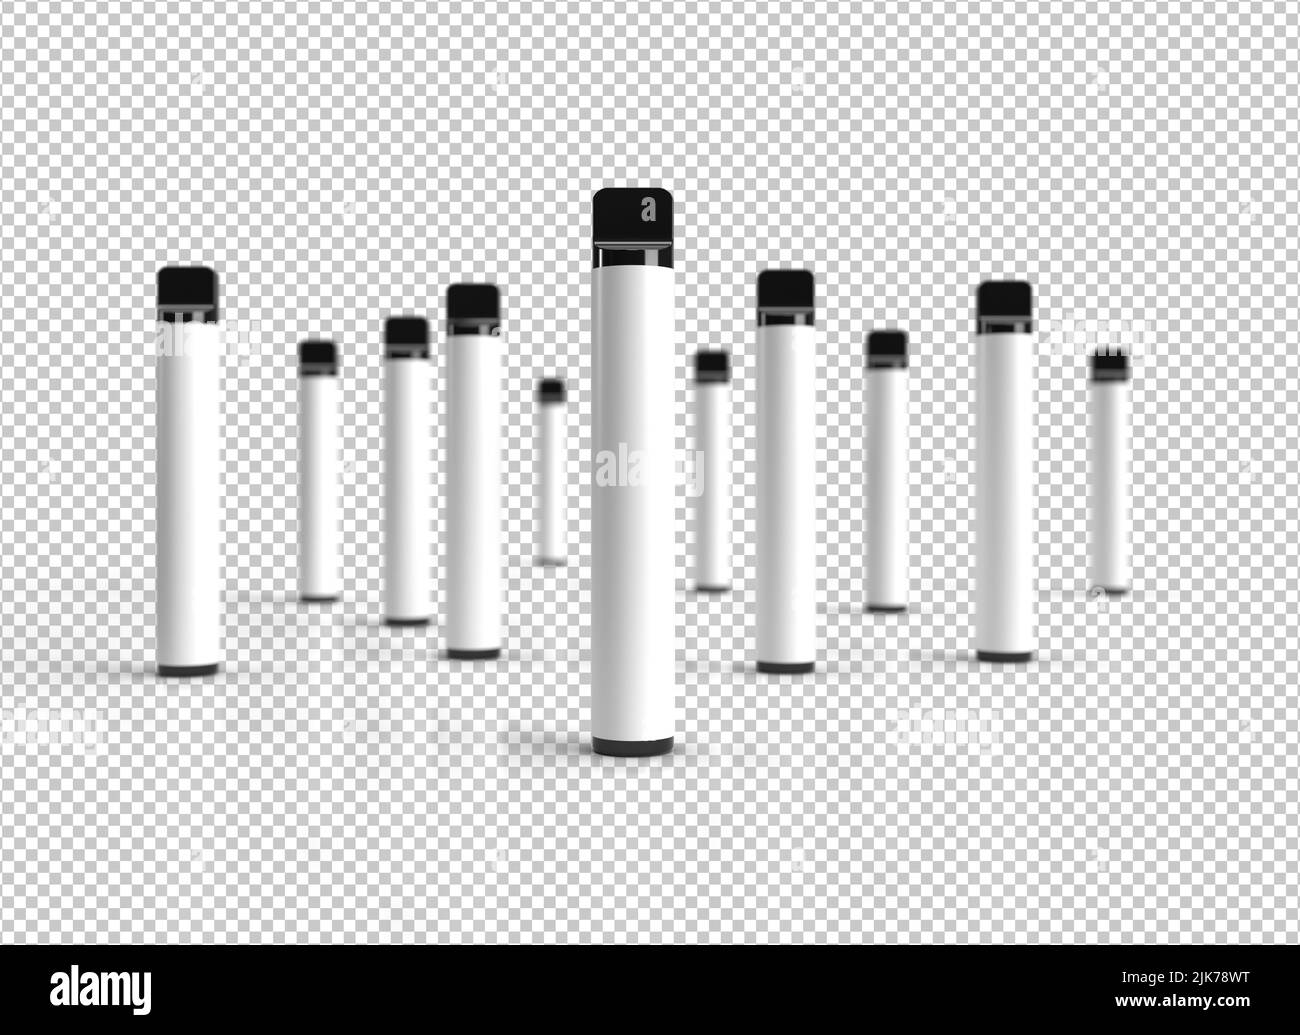 Penna monouso vape stick scena isolato su uno sfondo bianco con etichette bianche per spazio di copia. 3D rappresentazione illustrazione. Foto Stock